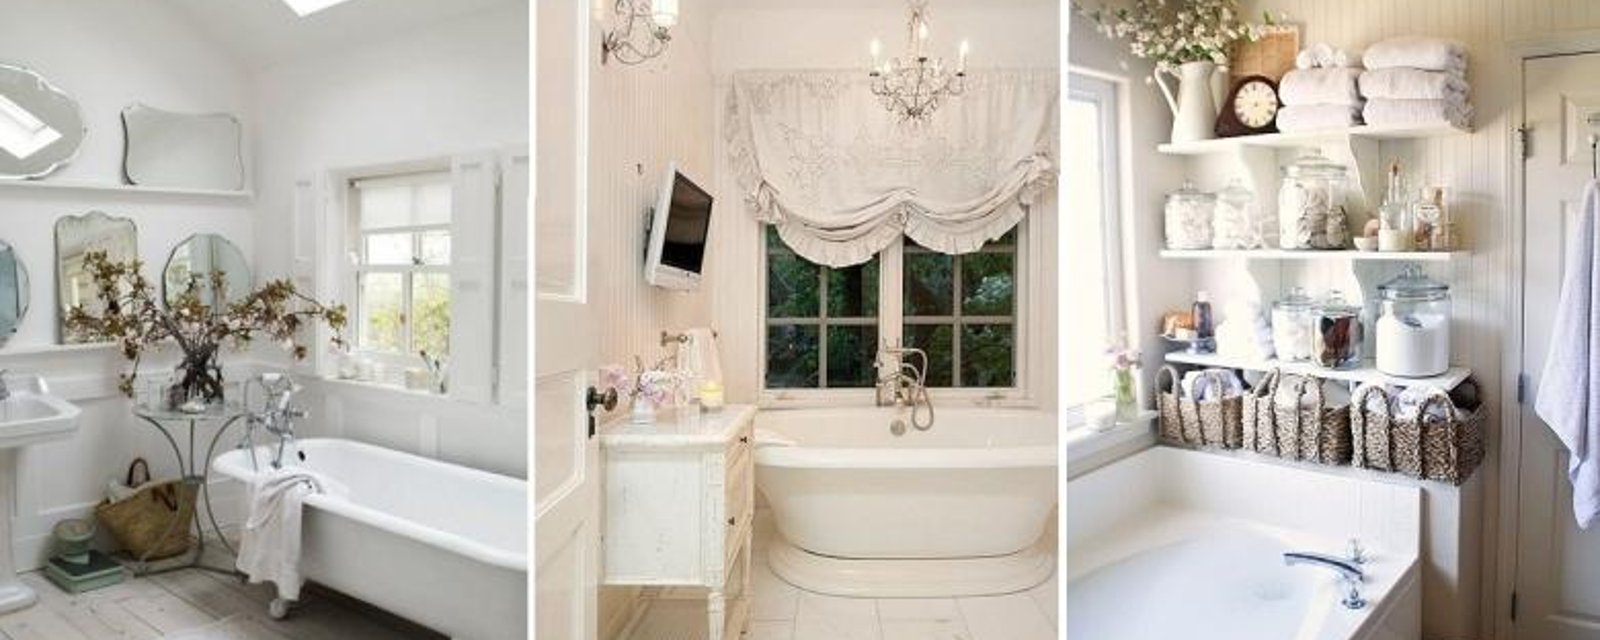 18 Magnifiques idées pour rendre une salle de bain, un peu plus Shabby Chic! 